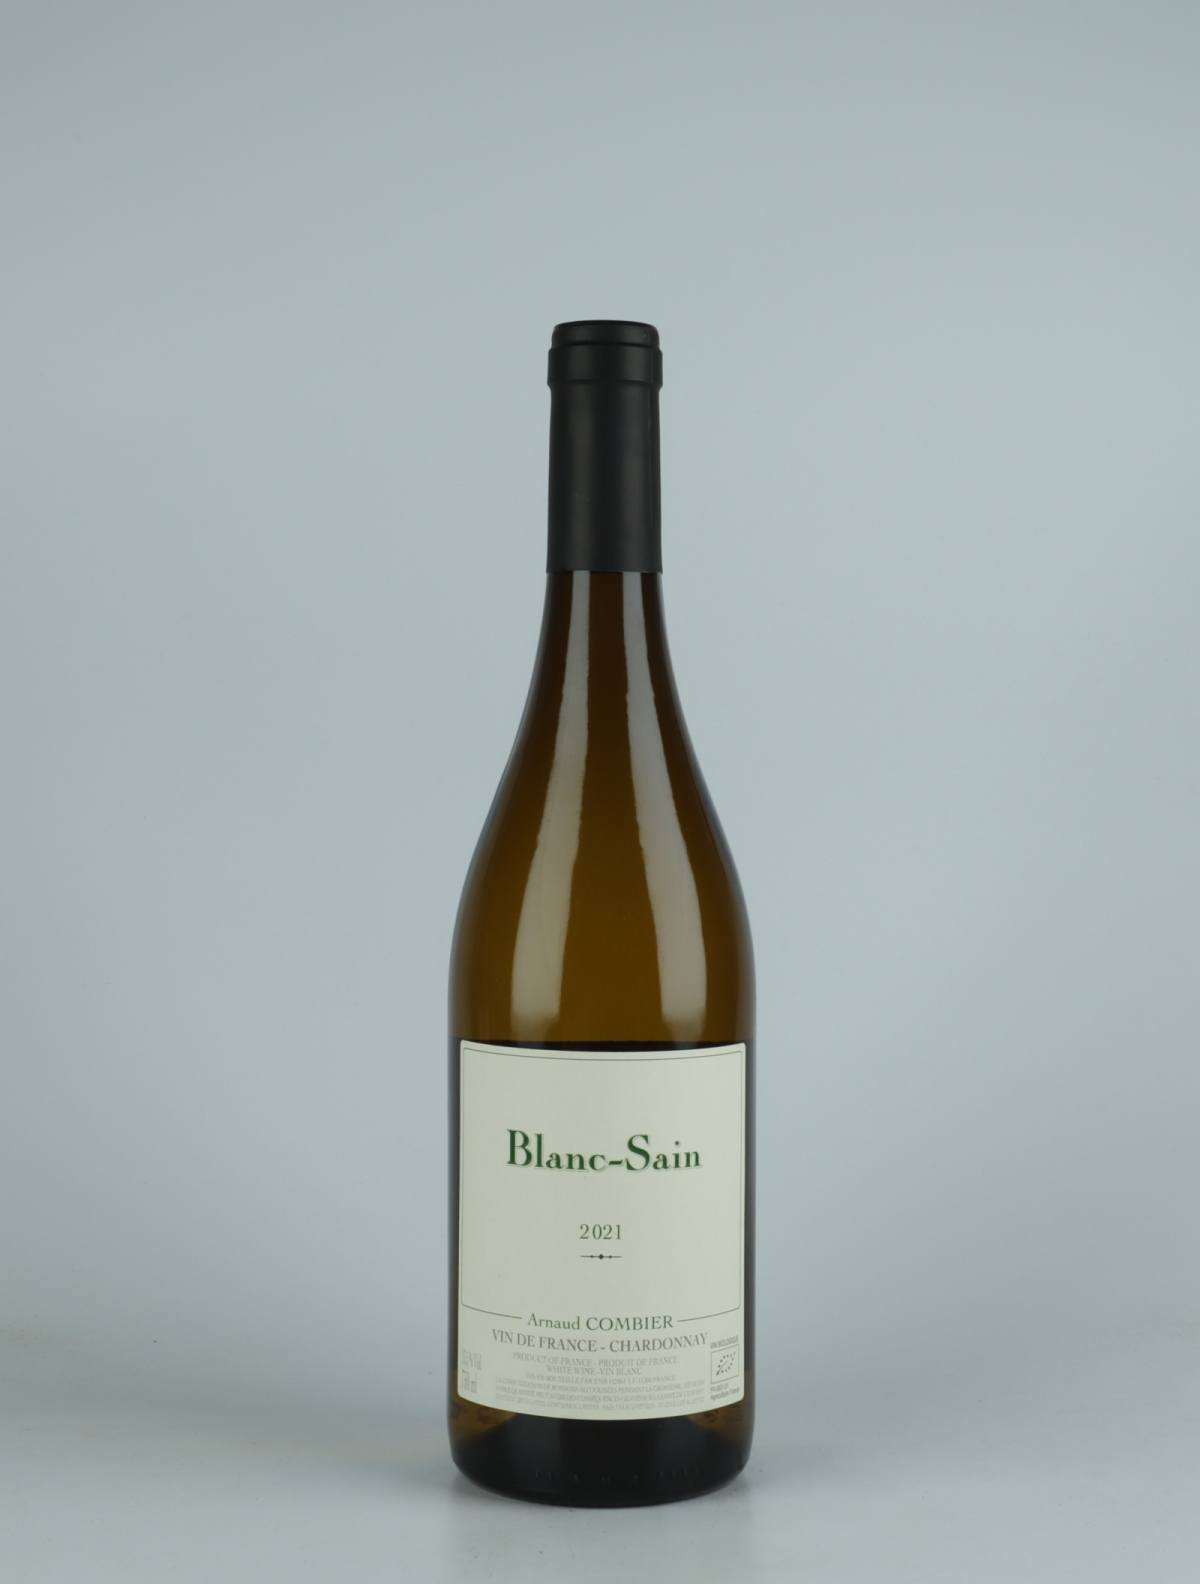 En flaske 2021 Blanc-Sain Hvidvin fra Arnaud Combier, Beaujolais i Frankrig